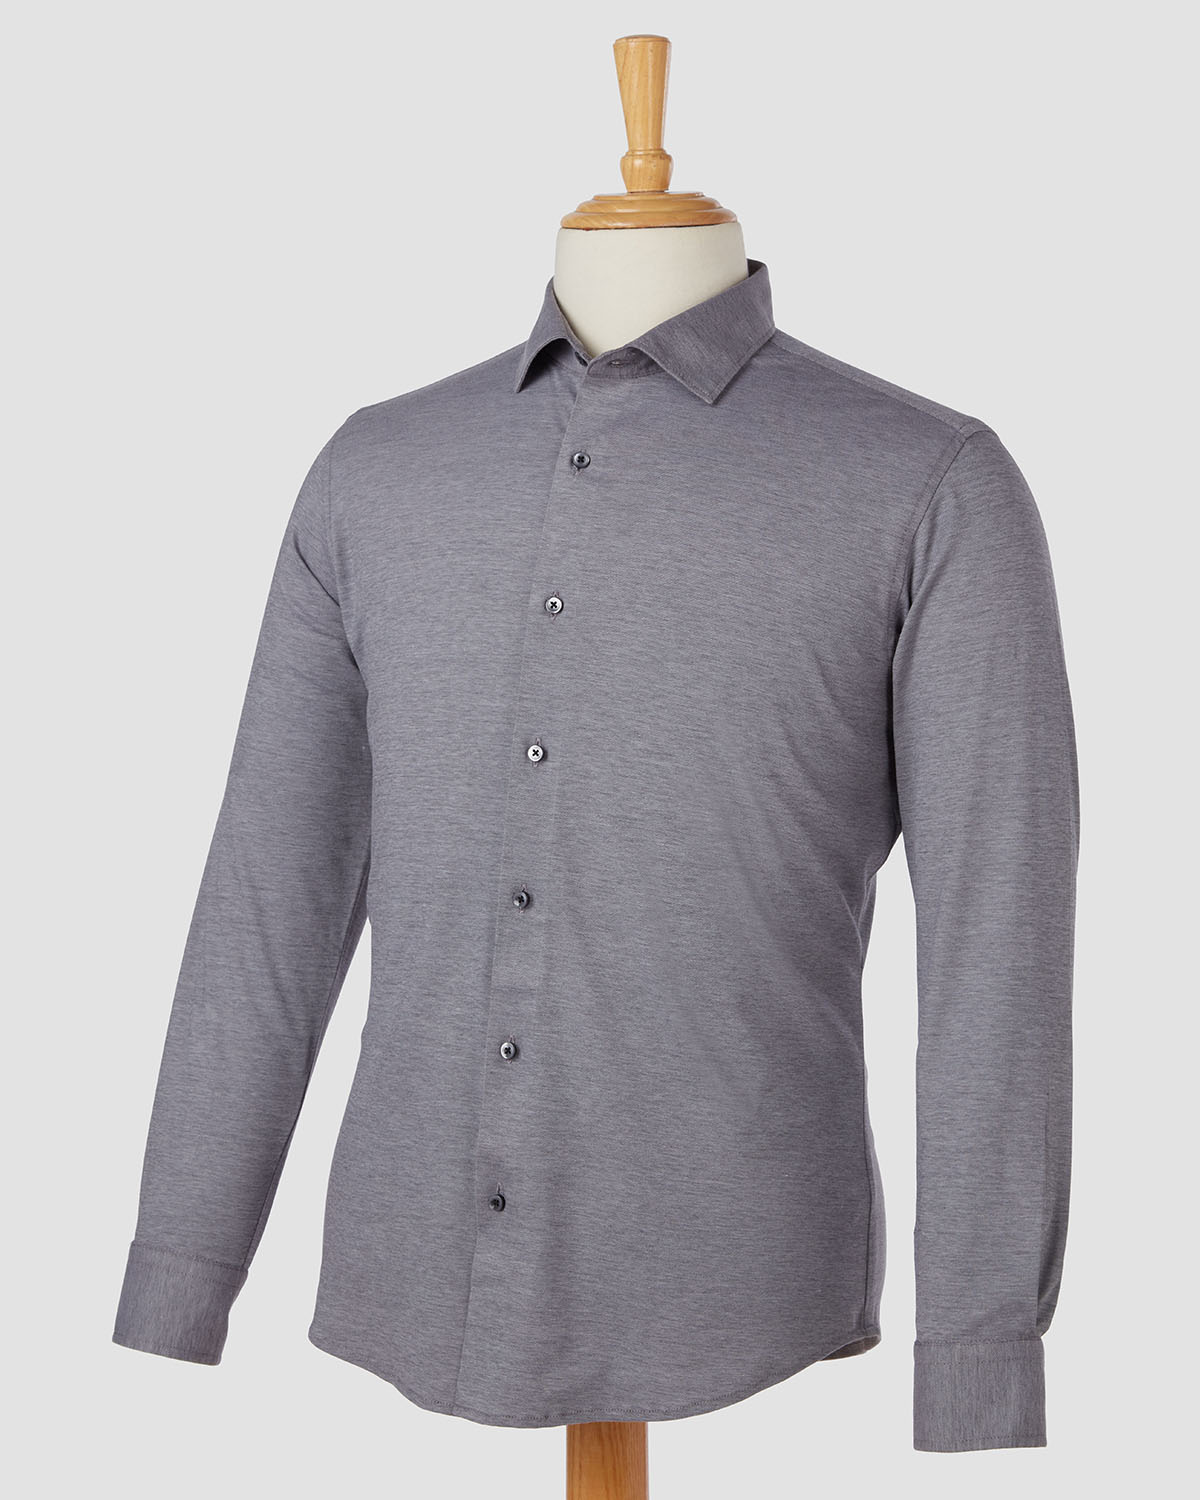 Bombay Shirt Company - Thomas Mason Grey Moonstone Knit Shirt